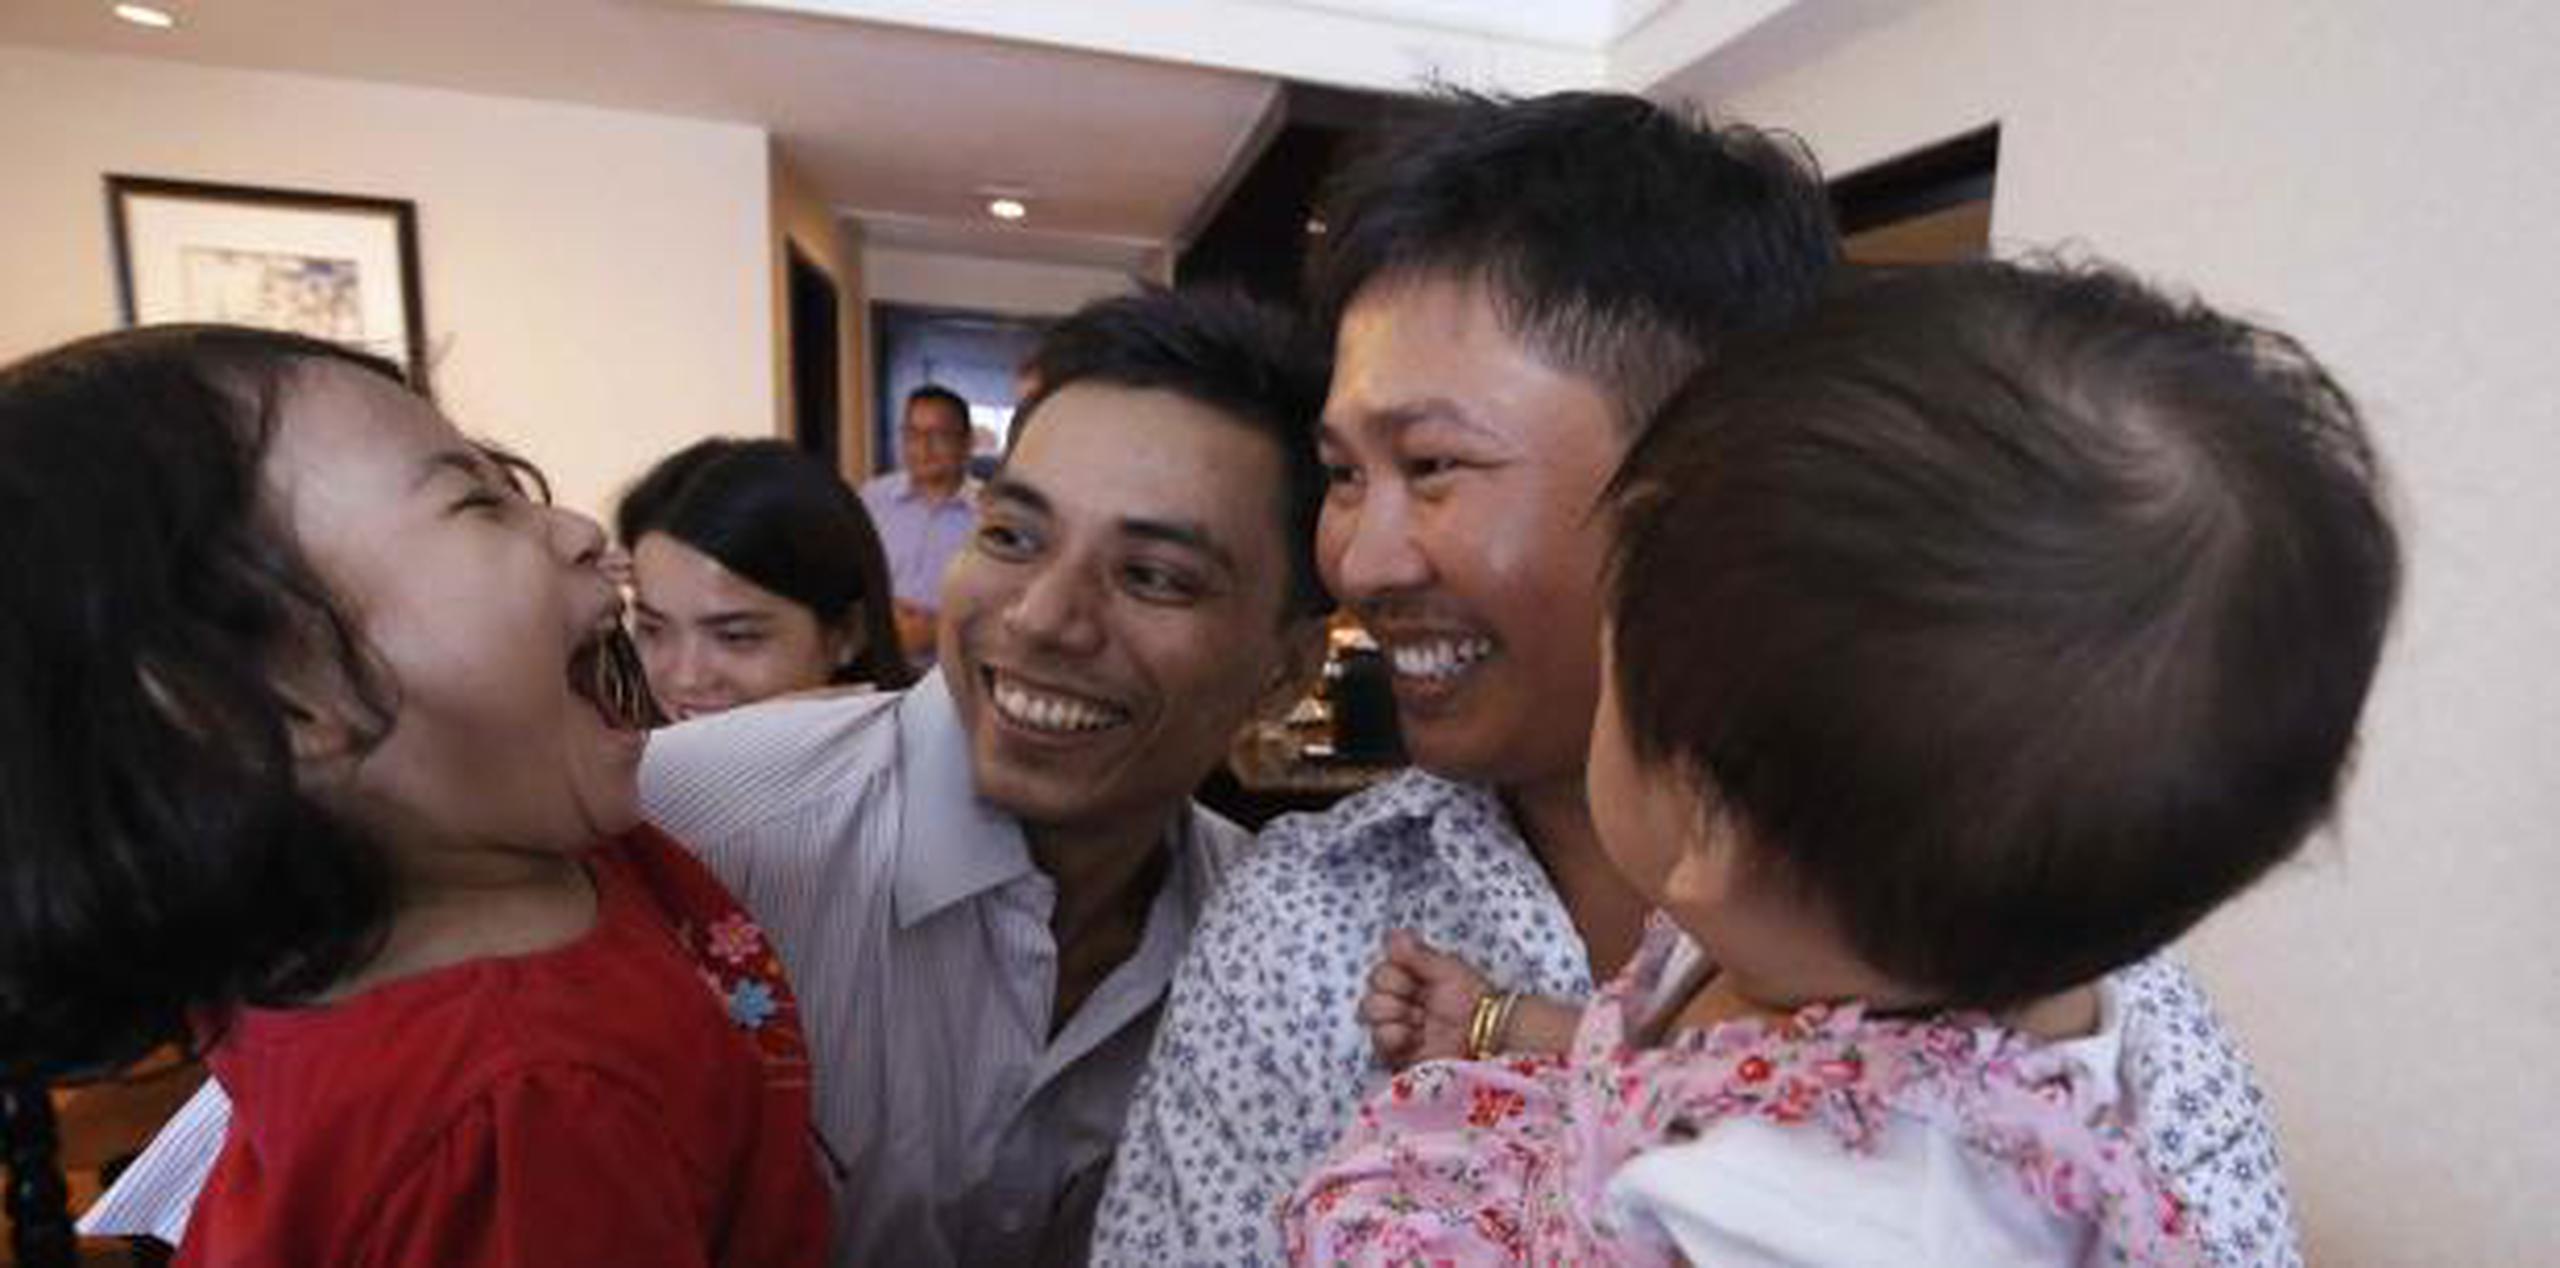 Los reporteros de Reuters Wa Lone y Kyaw Soe Oo celebraron con sus hijos luego de ser liberados de la prisión. (Reuters / Ann Wang / Pool / AP)